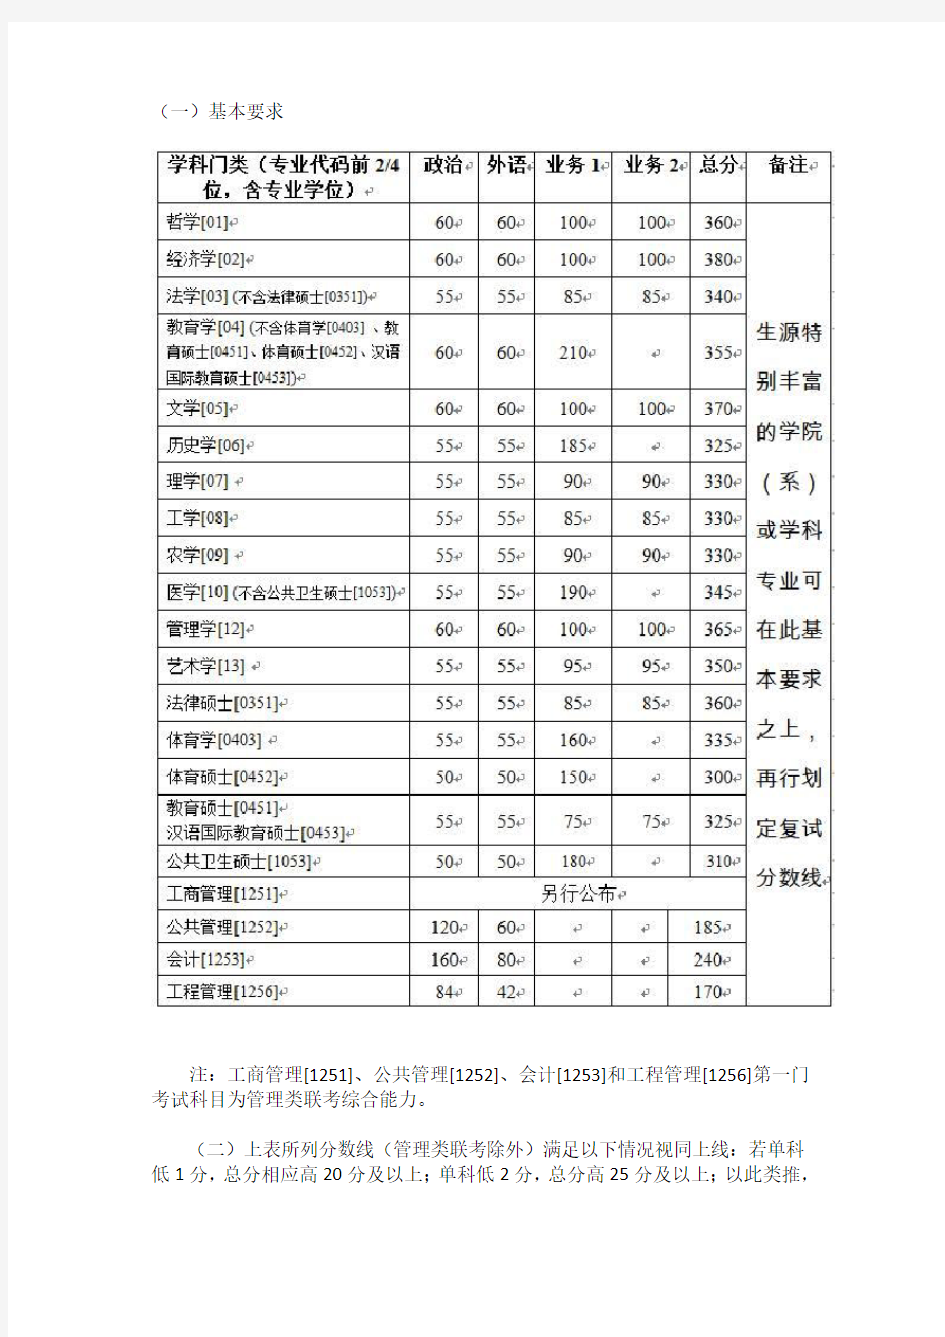 2019年浙江大学考研复试分数线